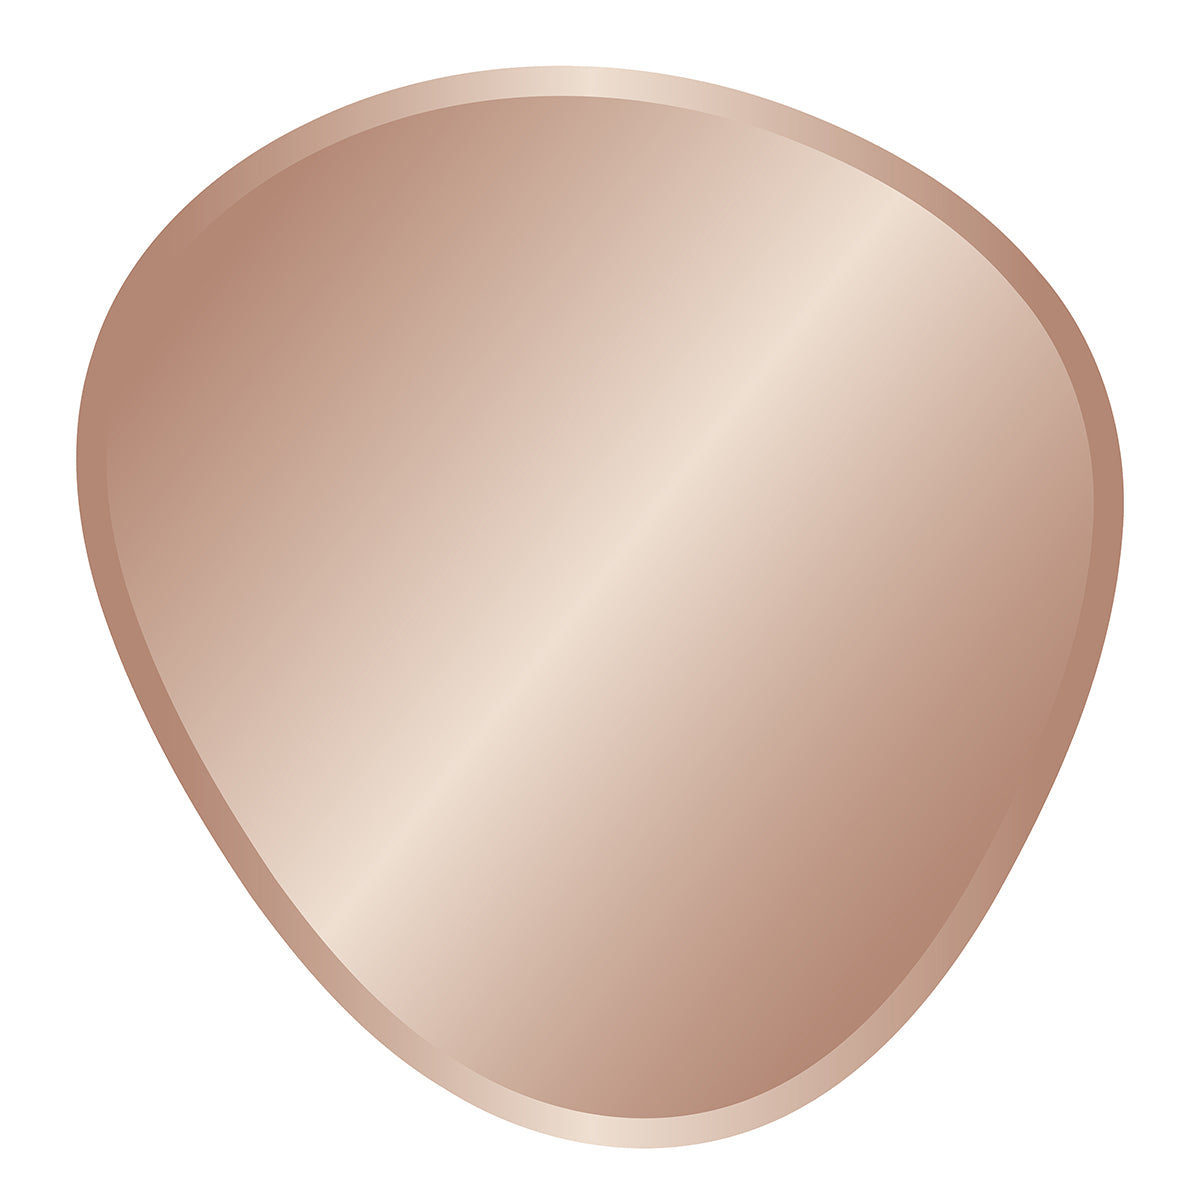 INCADO Καθρέφτης Καθρέφτης Τοίχου Γυαλί Ασύμμετρος Ροζ Χρυσό Η70xB 67,7cm INCADO